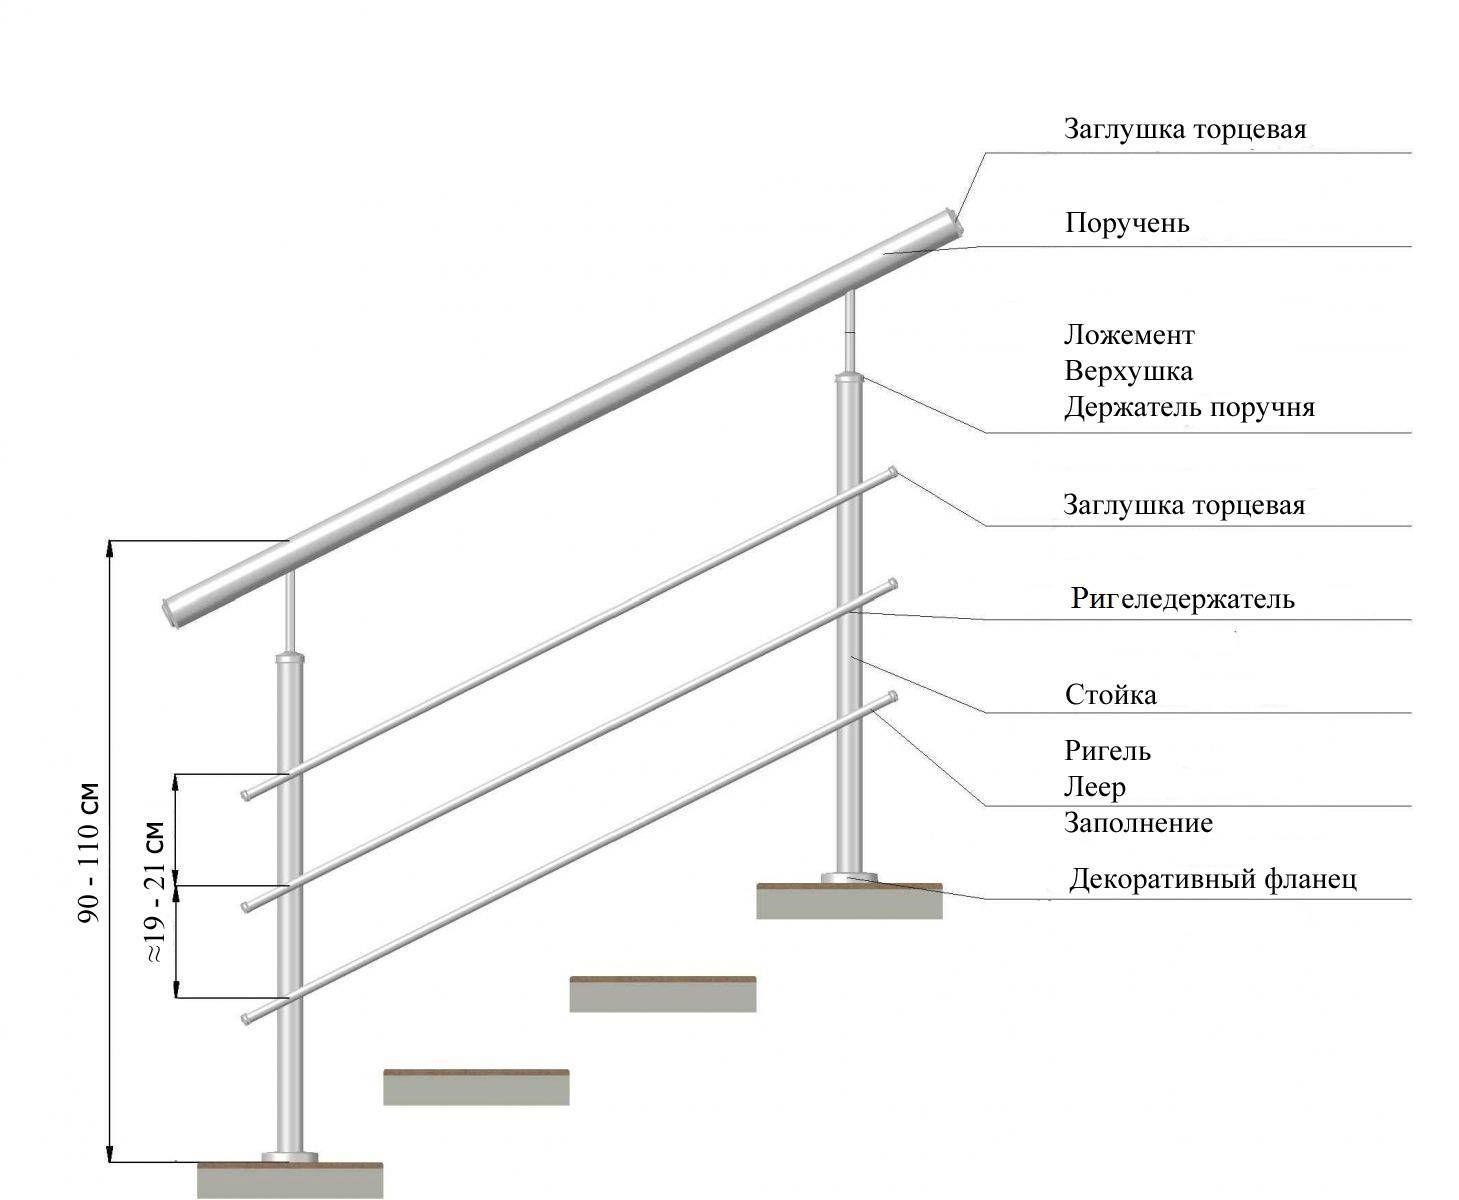 Снип на лестницы: все требования при расчетах и основные положения